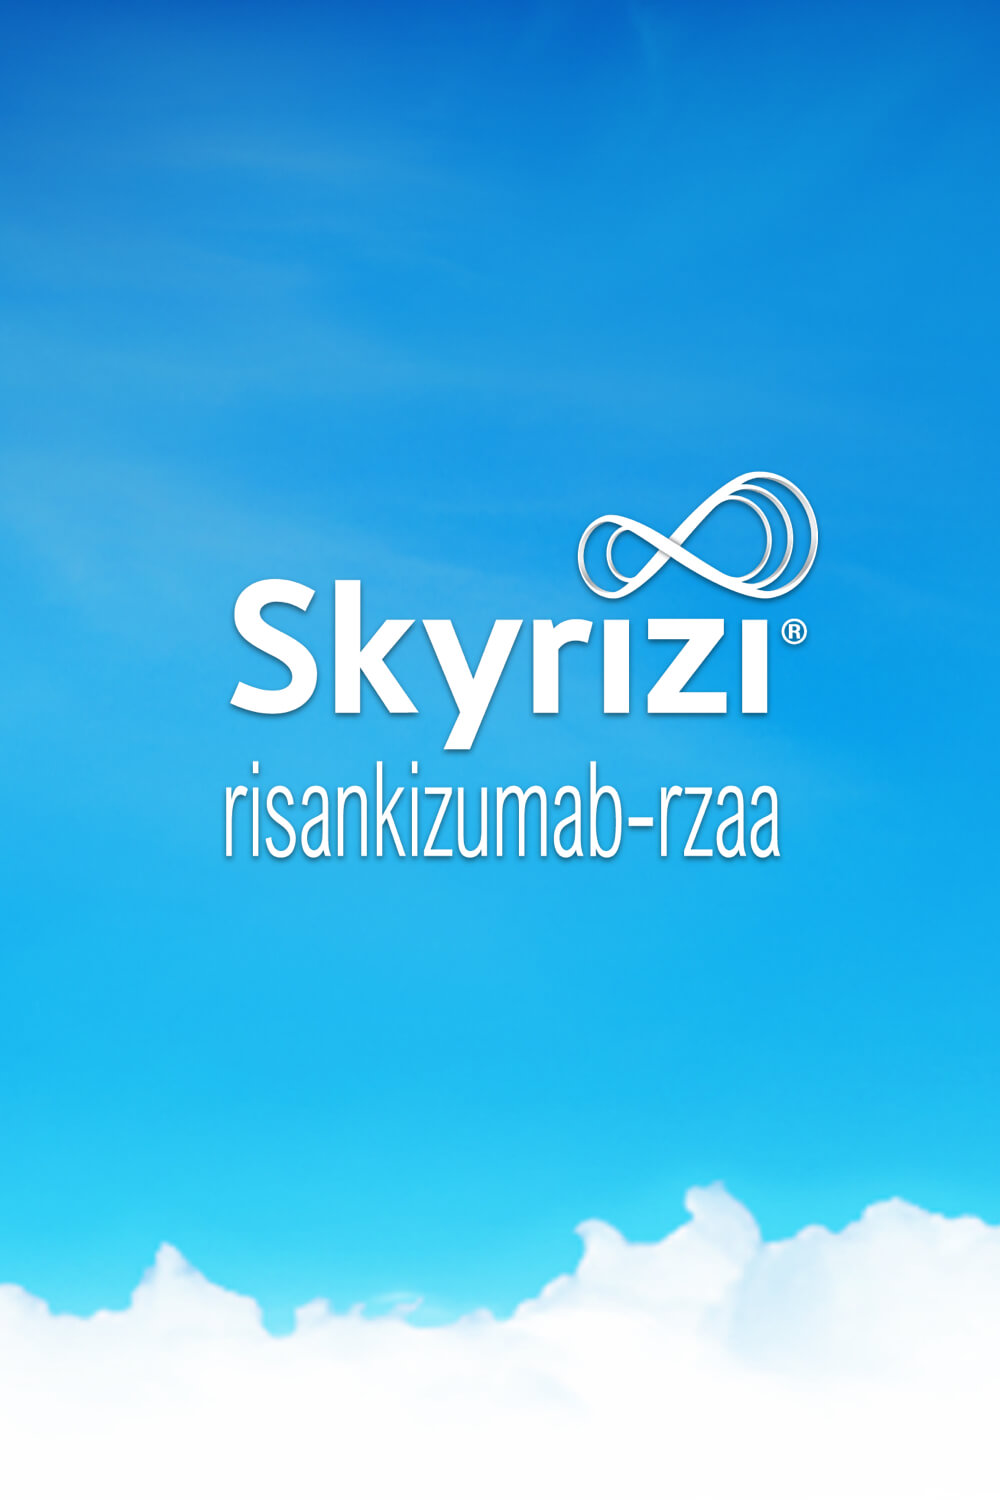 skyrizi-risankizumab-rzaa-a-biologic-treatment